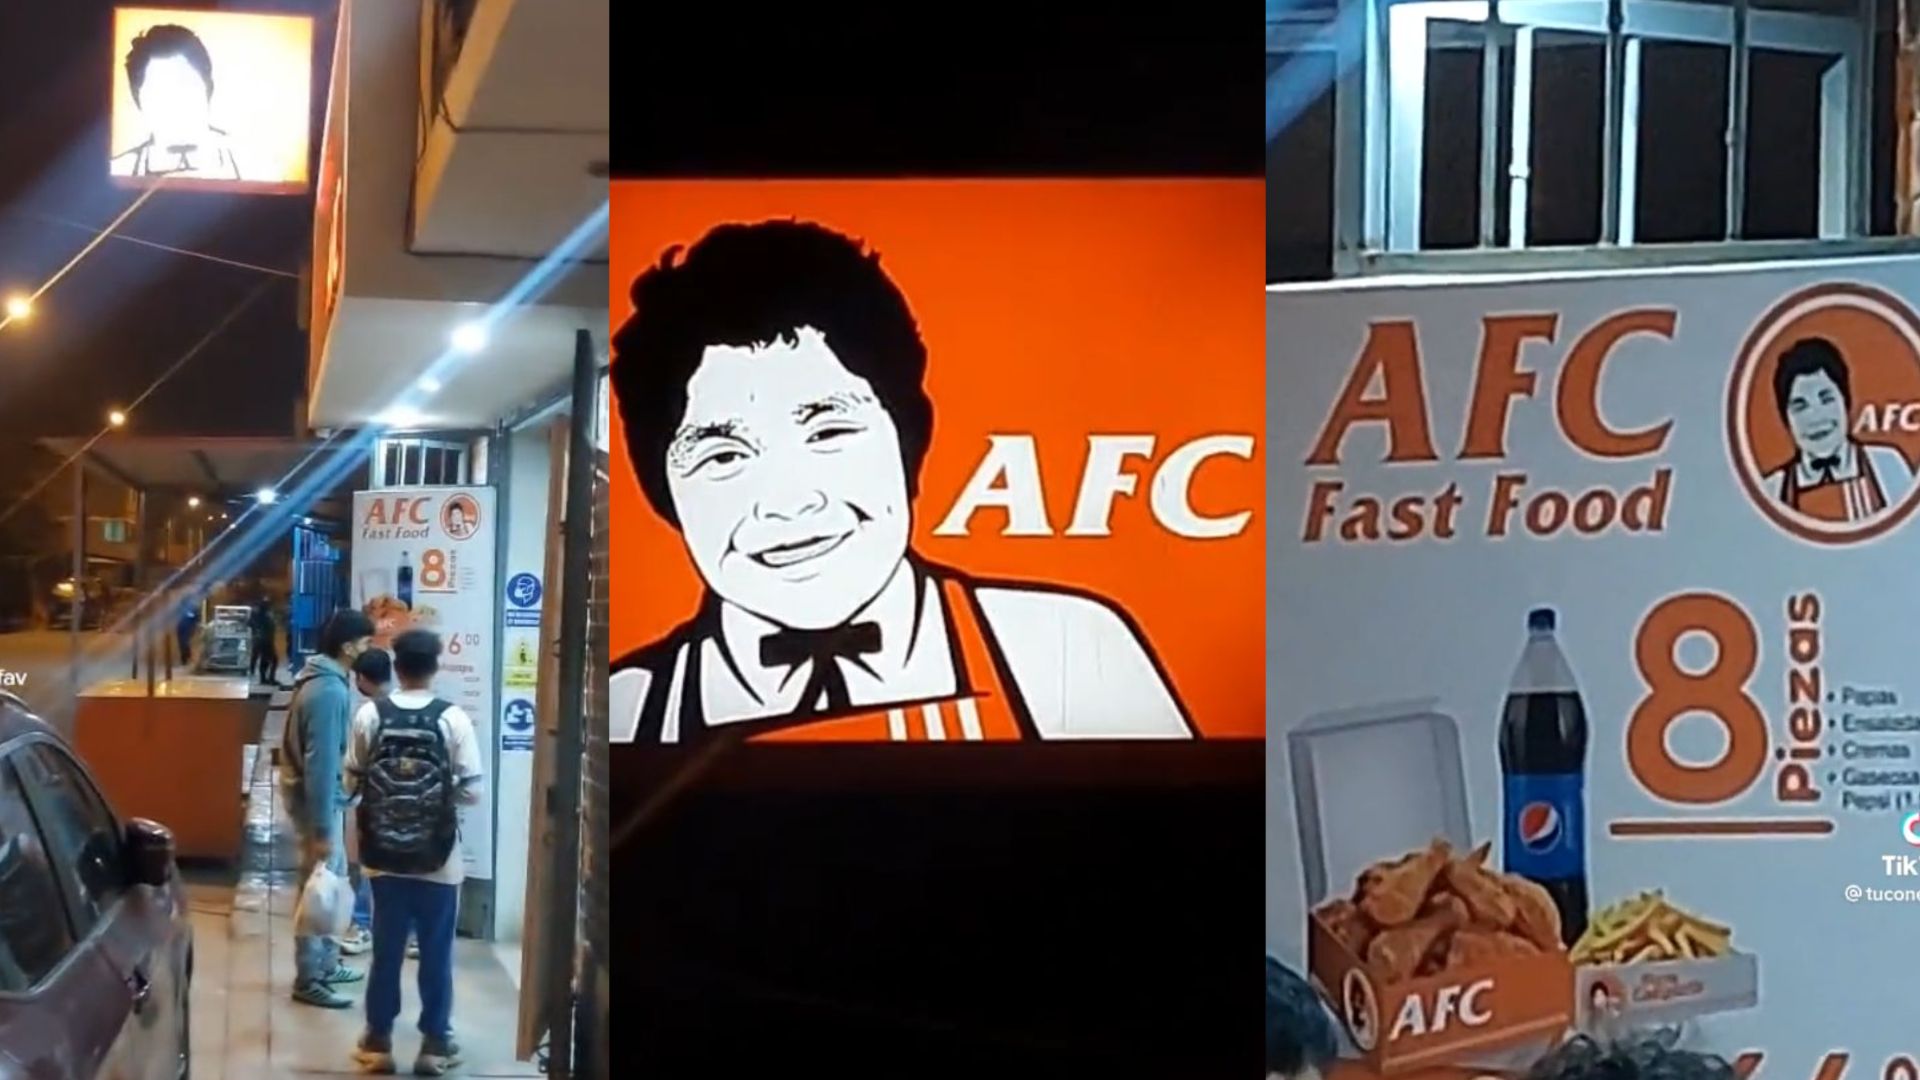 Usuario graba un local llamado AFC y su parecido a KFC genera furor en TikTok